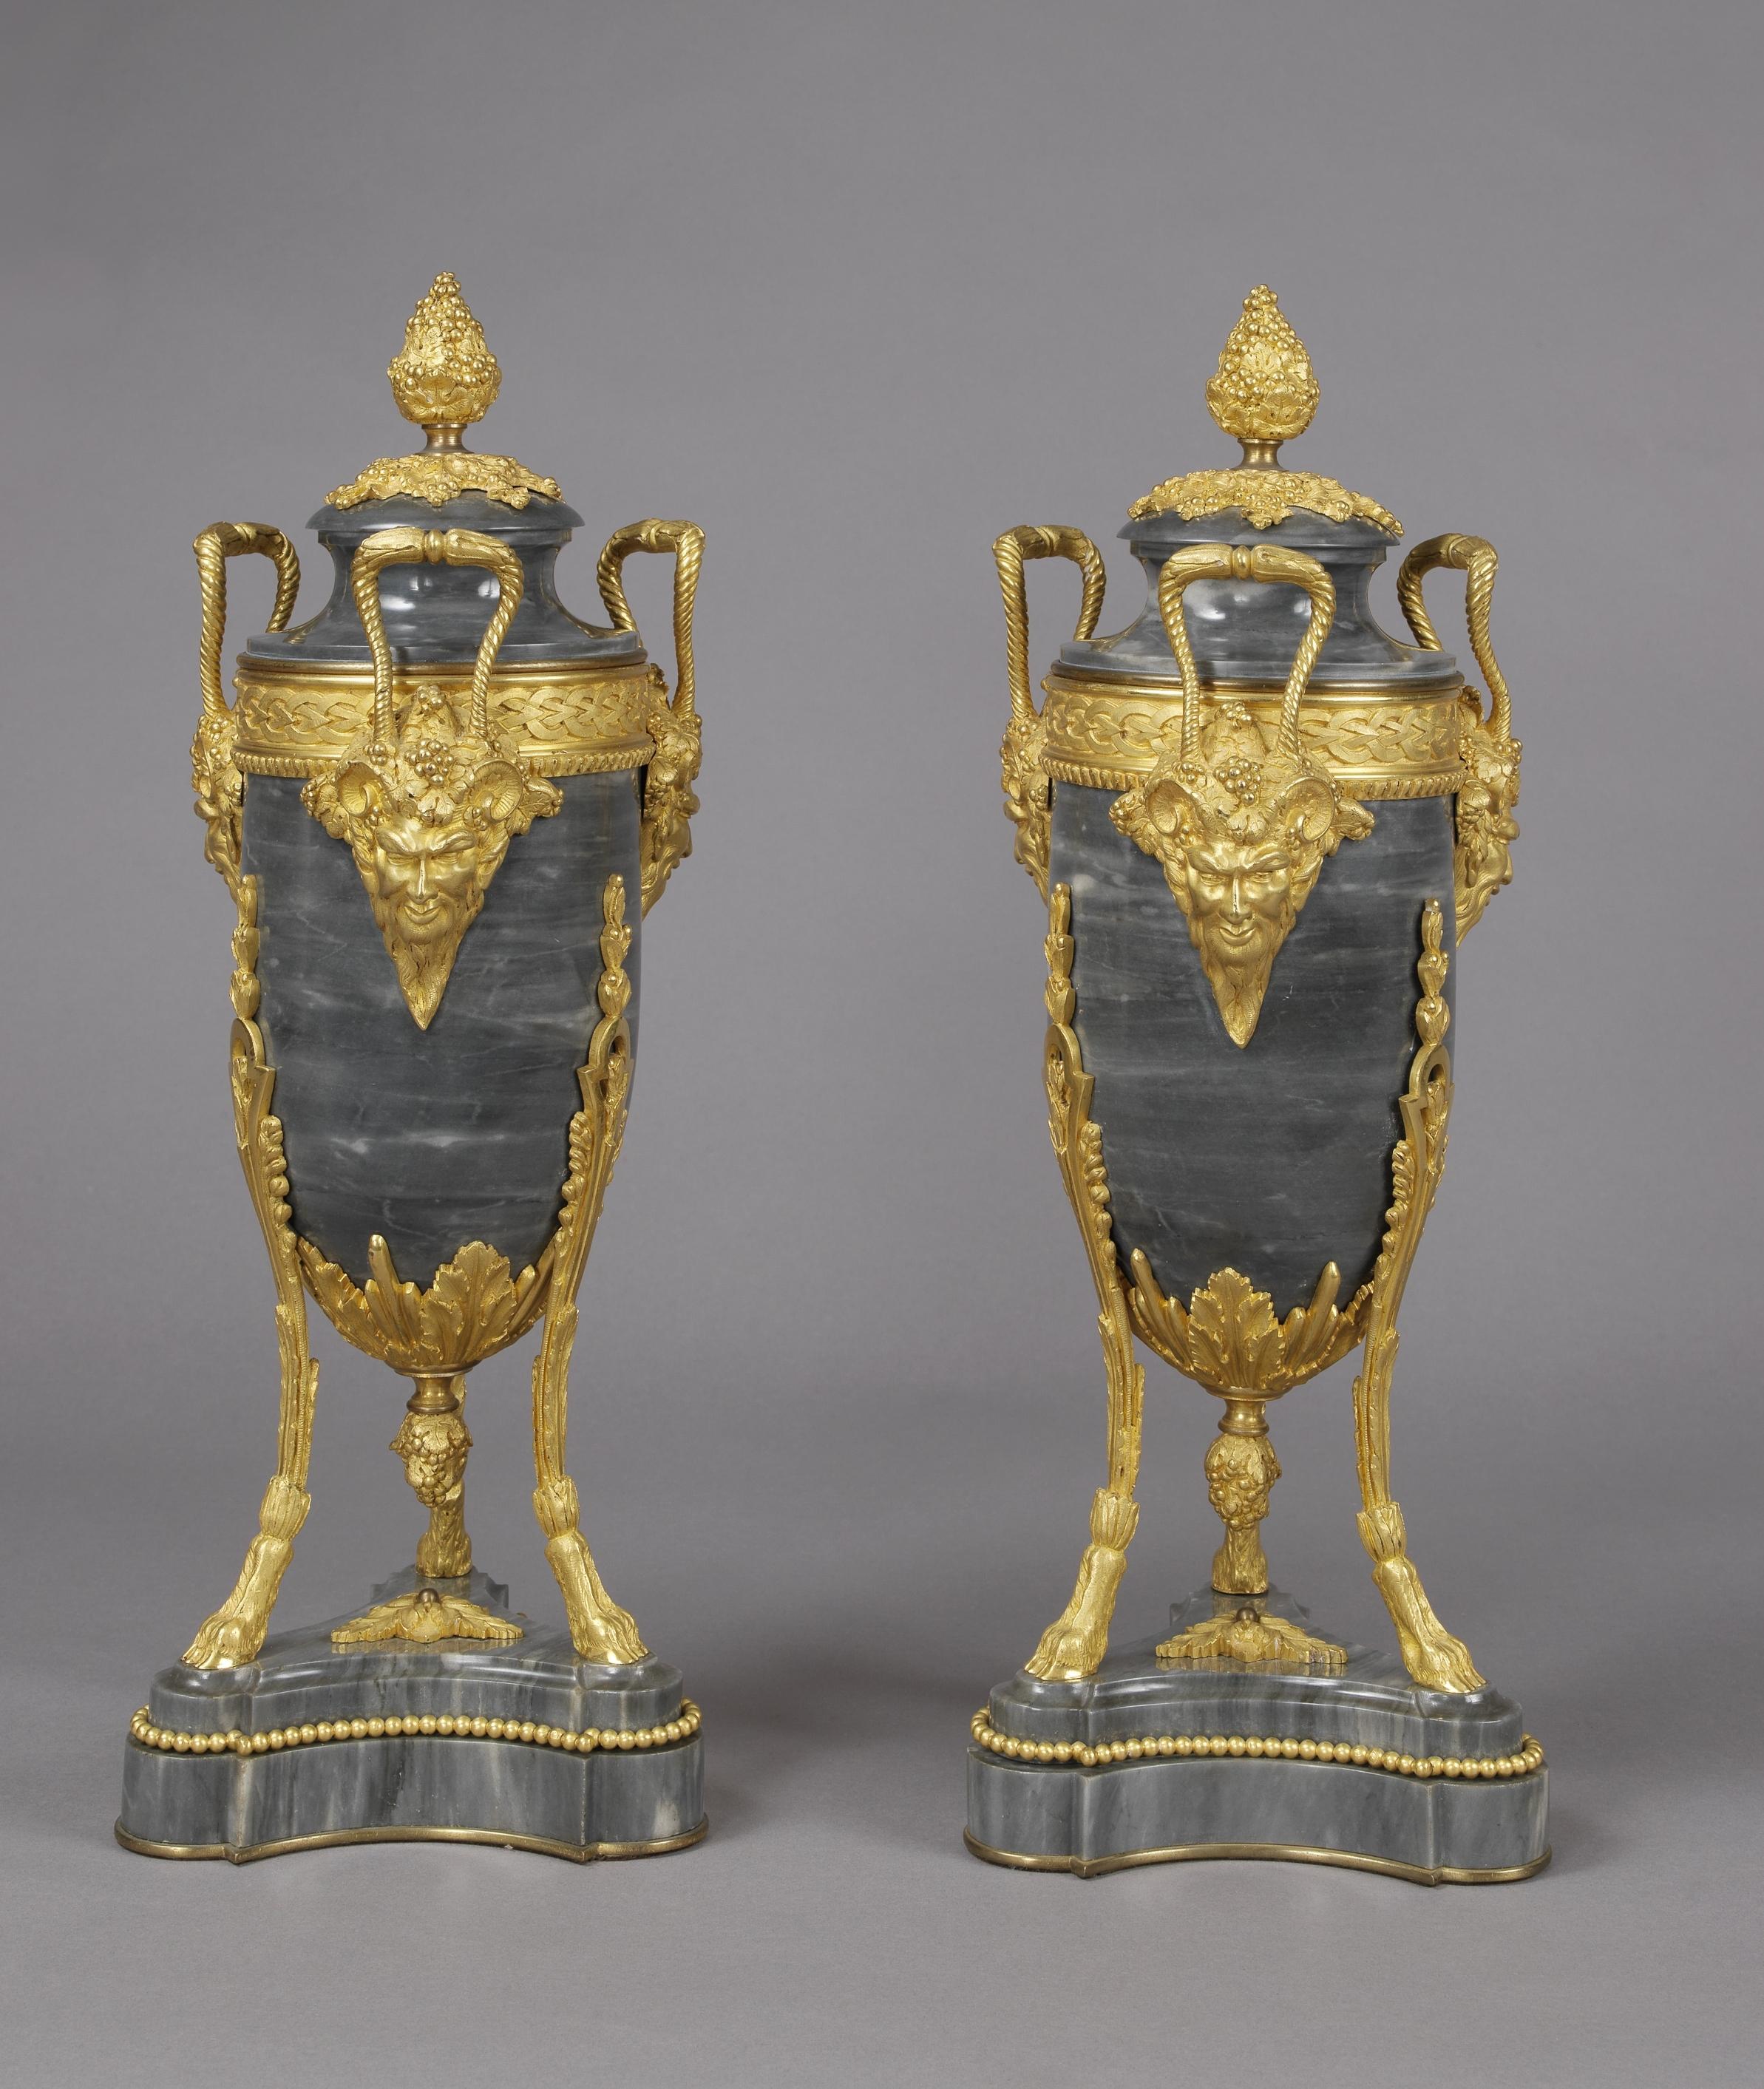 Ein feines Paar vergoldeter Bronze-Urnen im Louis XVI-Stil aus Marmor Bleu Turquin mit Satyrmasken, die Maxime Secrétant zugeschrieben werden. 

Frankreich, um 1890. 

Die Bronzebeschläge sind mit dem ineinander verschlungenen Monogramm 